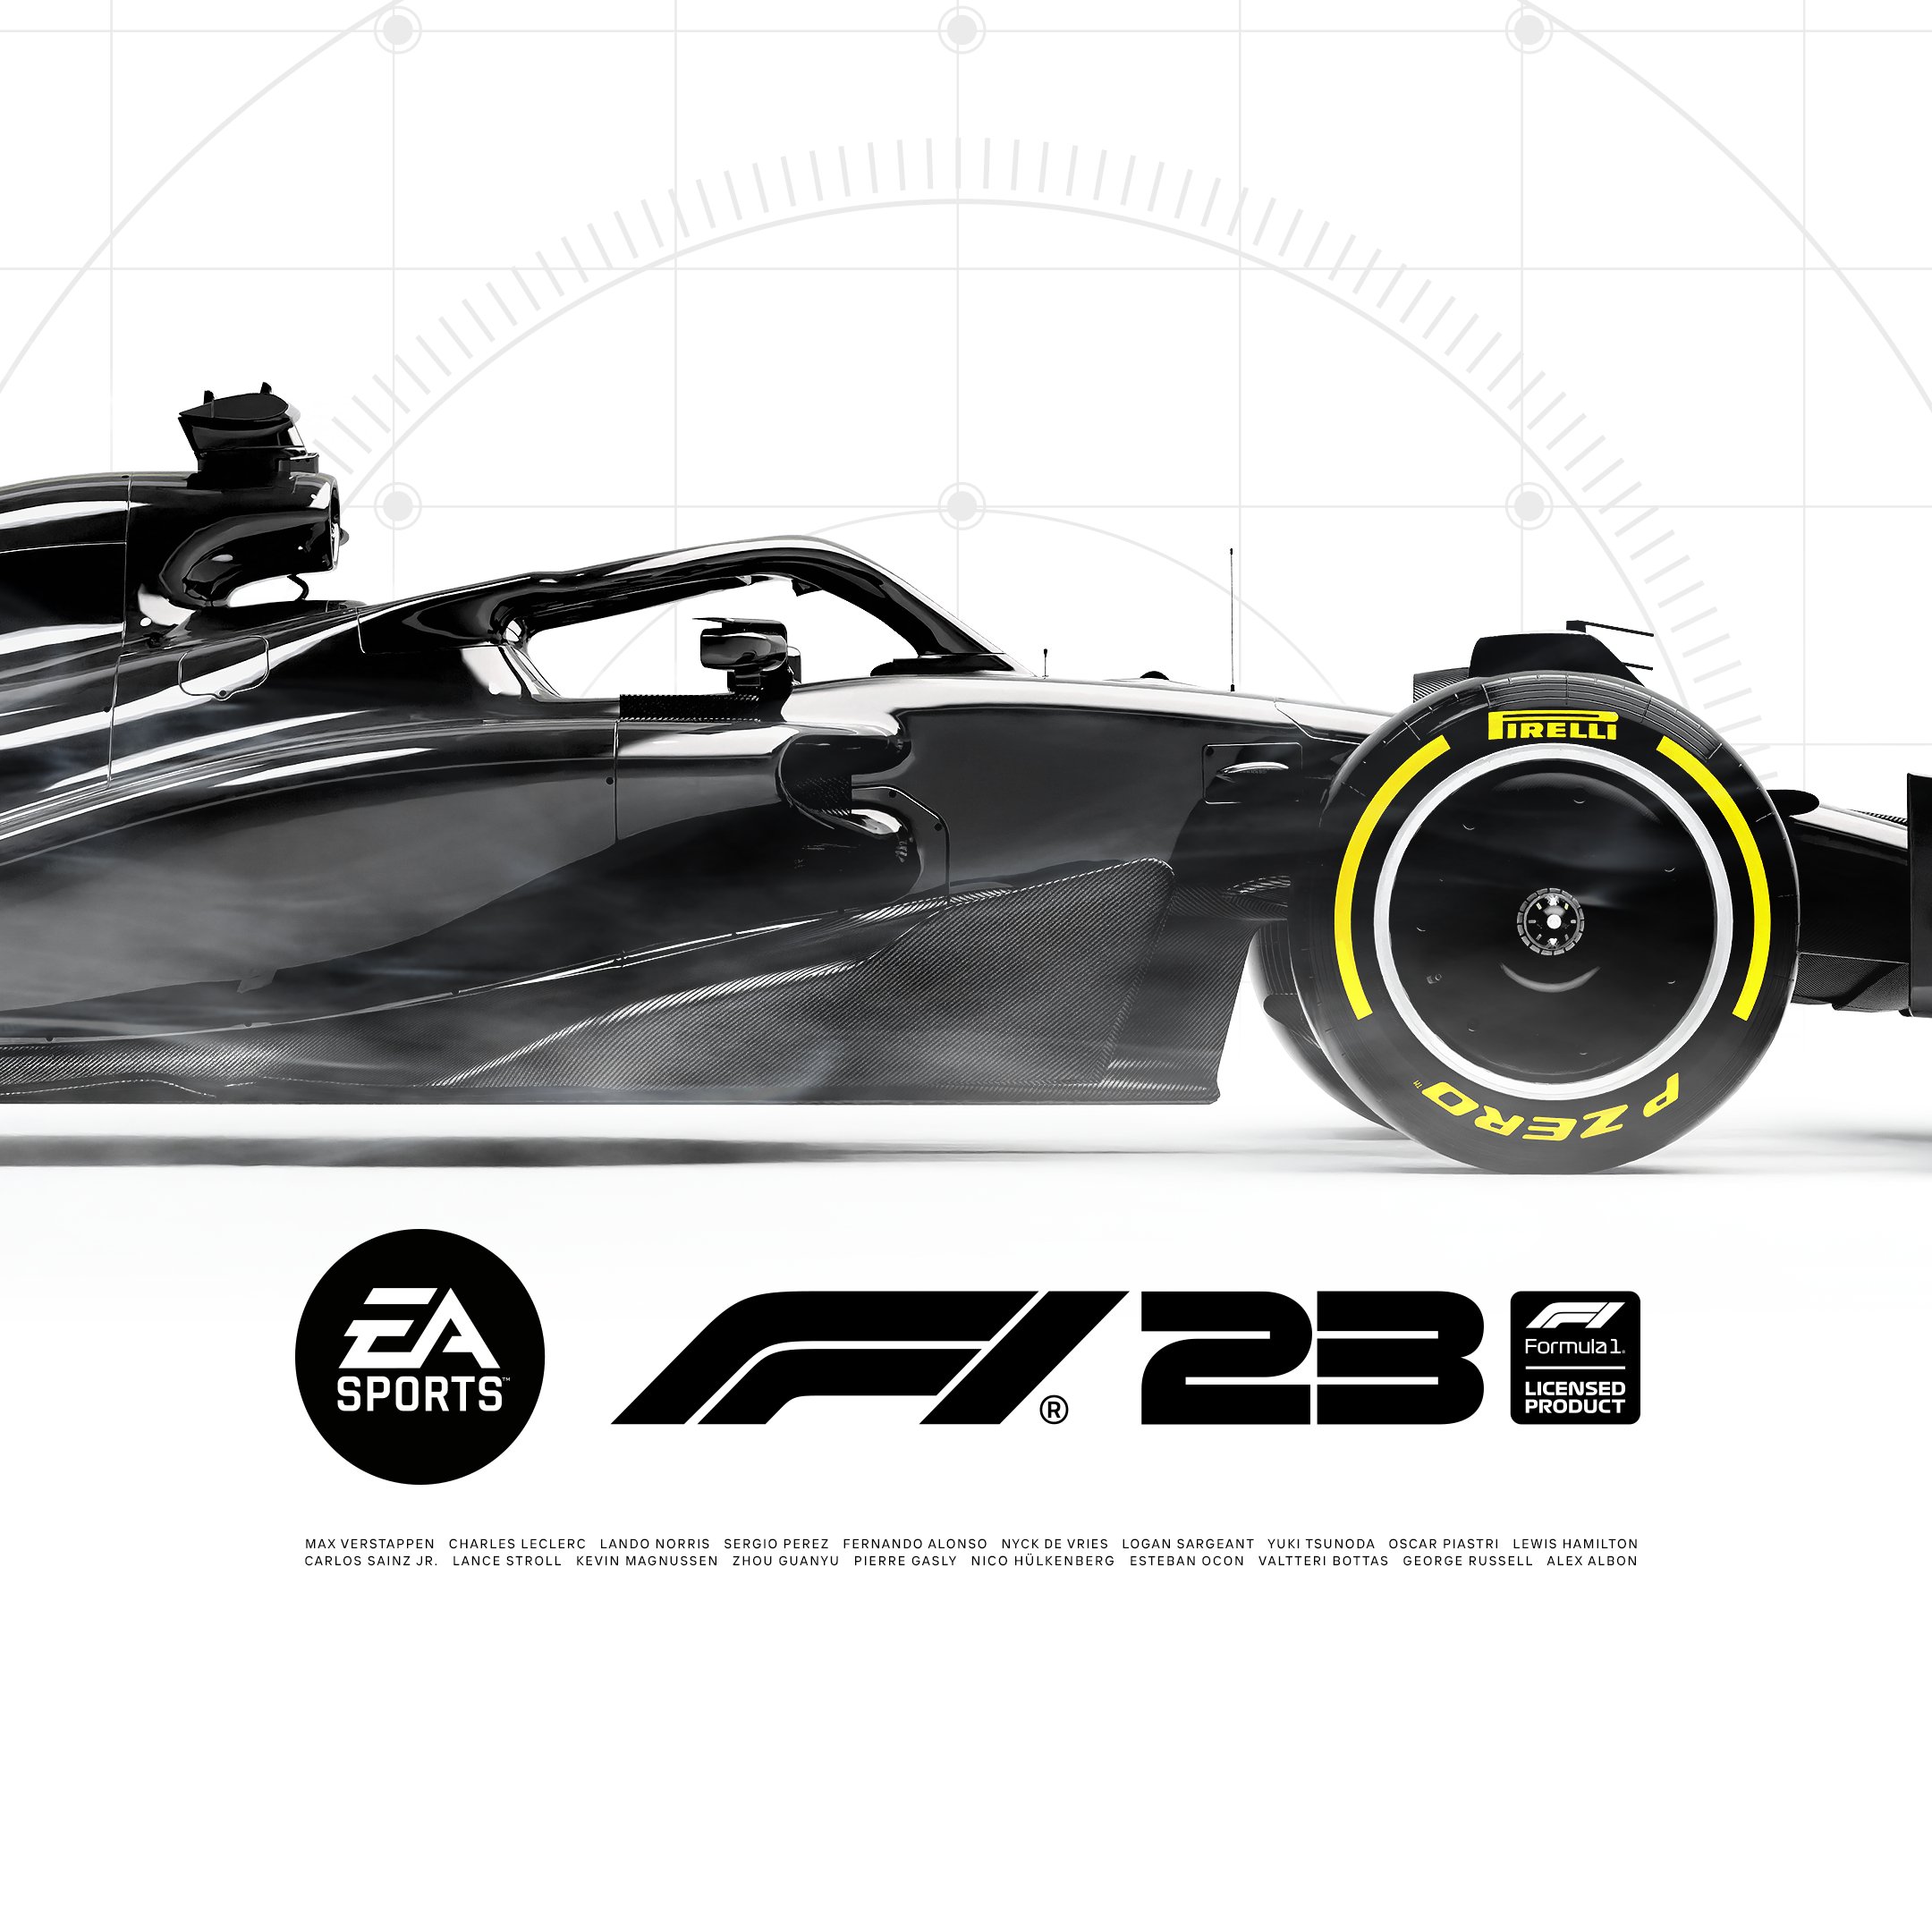 F1 23 traz o retorno do modo Breaking Point, mas, desta vez, mais